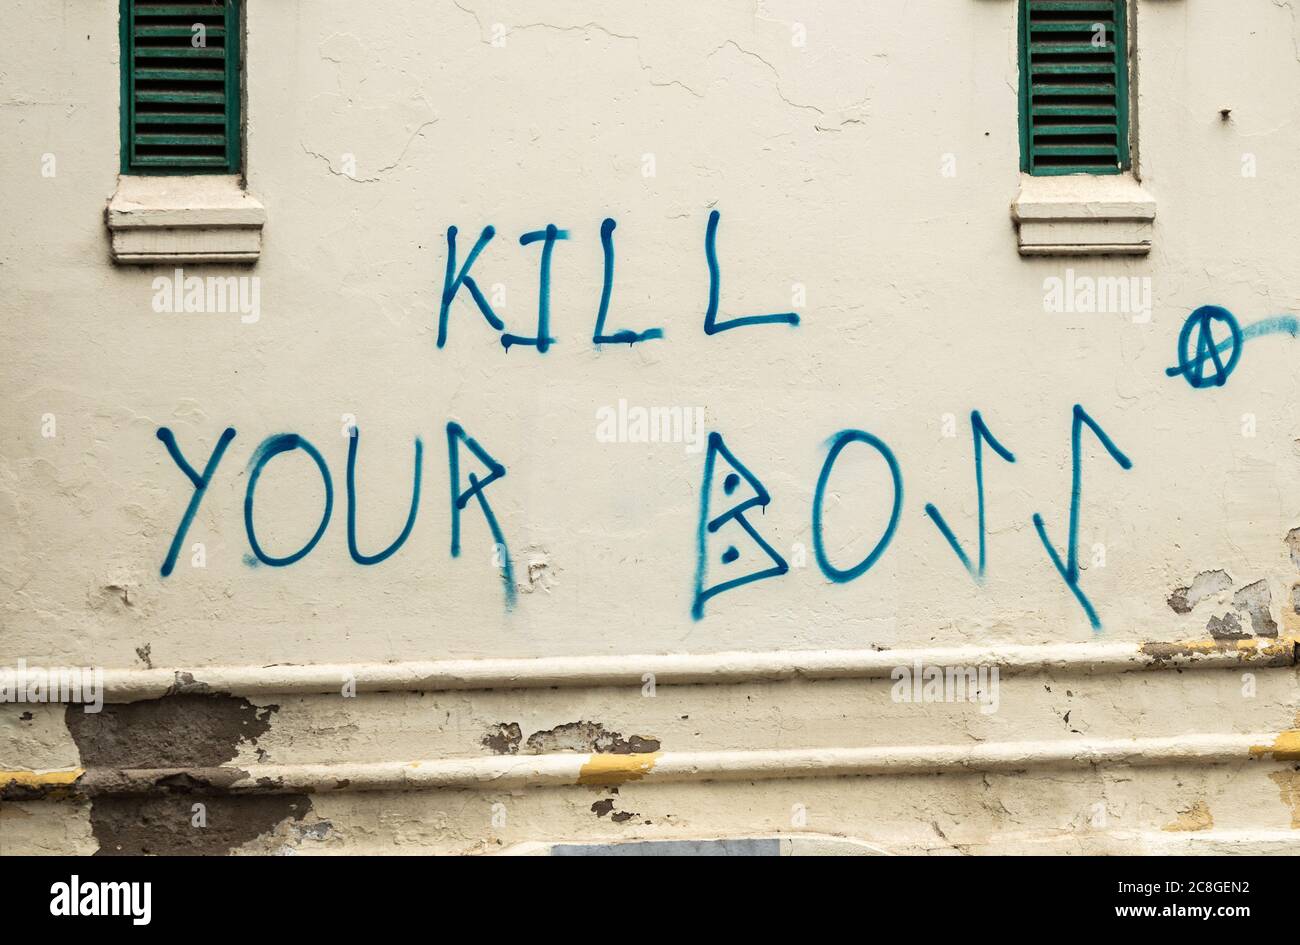 Kill your boss graffiti Stock Photo